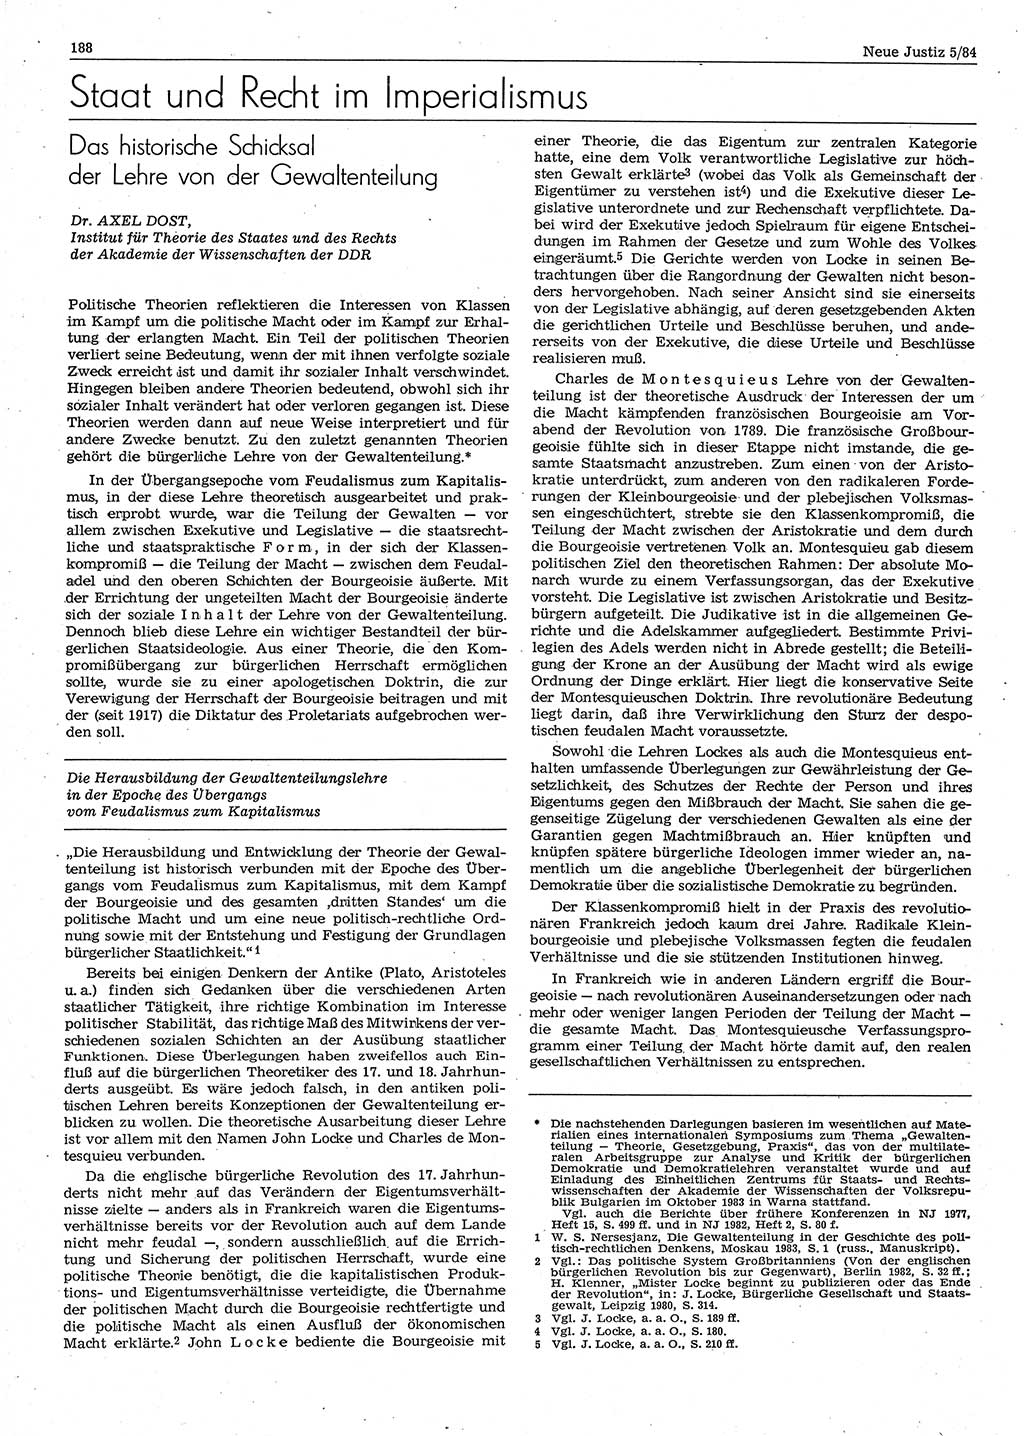 Neue Justiz (NJ), Zeitschrift für sozialistisches Recht und Gesetzlichkeit [Deutsche Demokratische Republik (DDR)], 38. Jahrgang 1984, Seite 188 (NJ DDR 1984, S. 188)